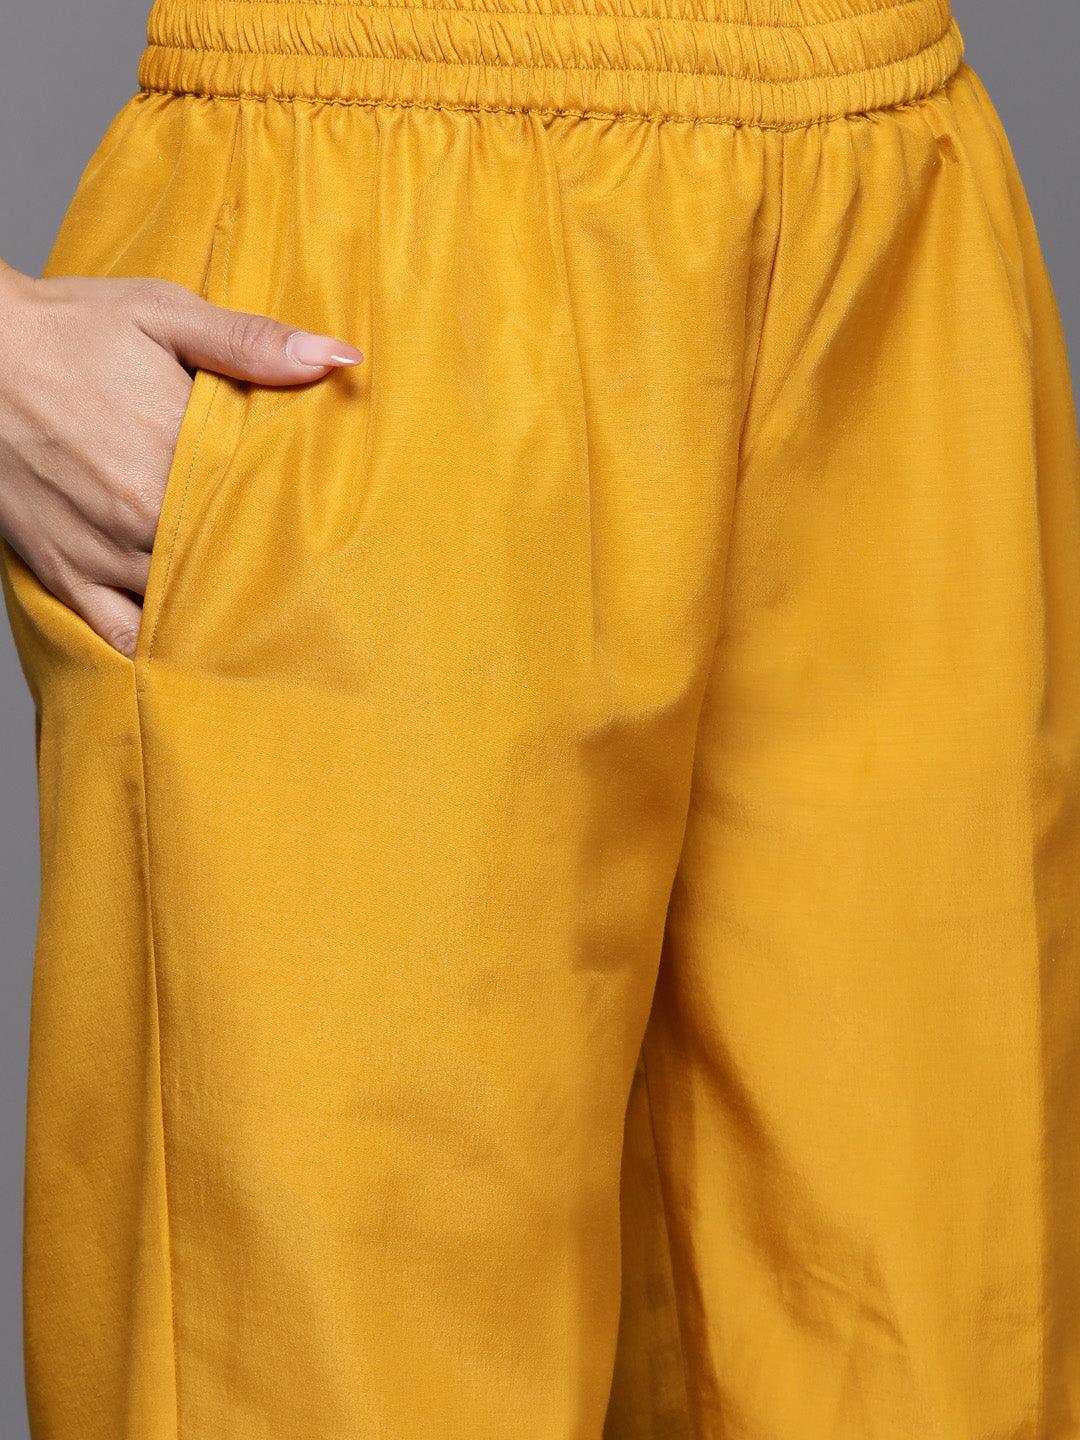 Yellow Printed Chiffon Straight Kurta With Trousers & Dupatta